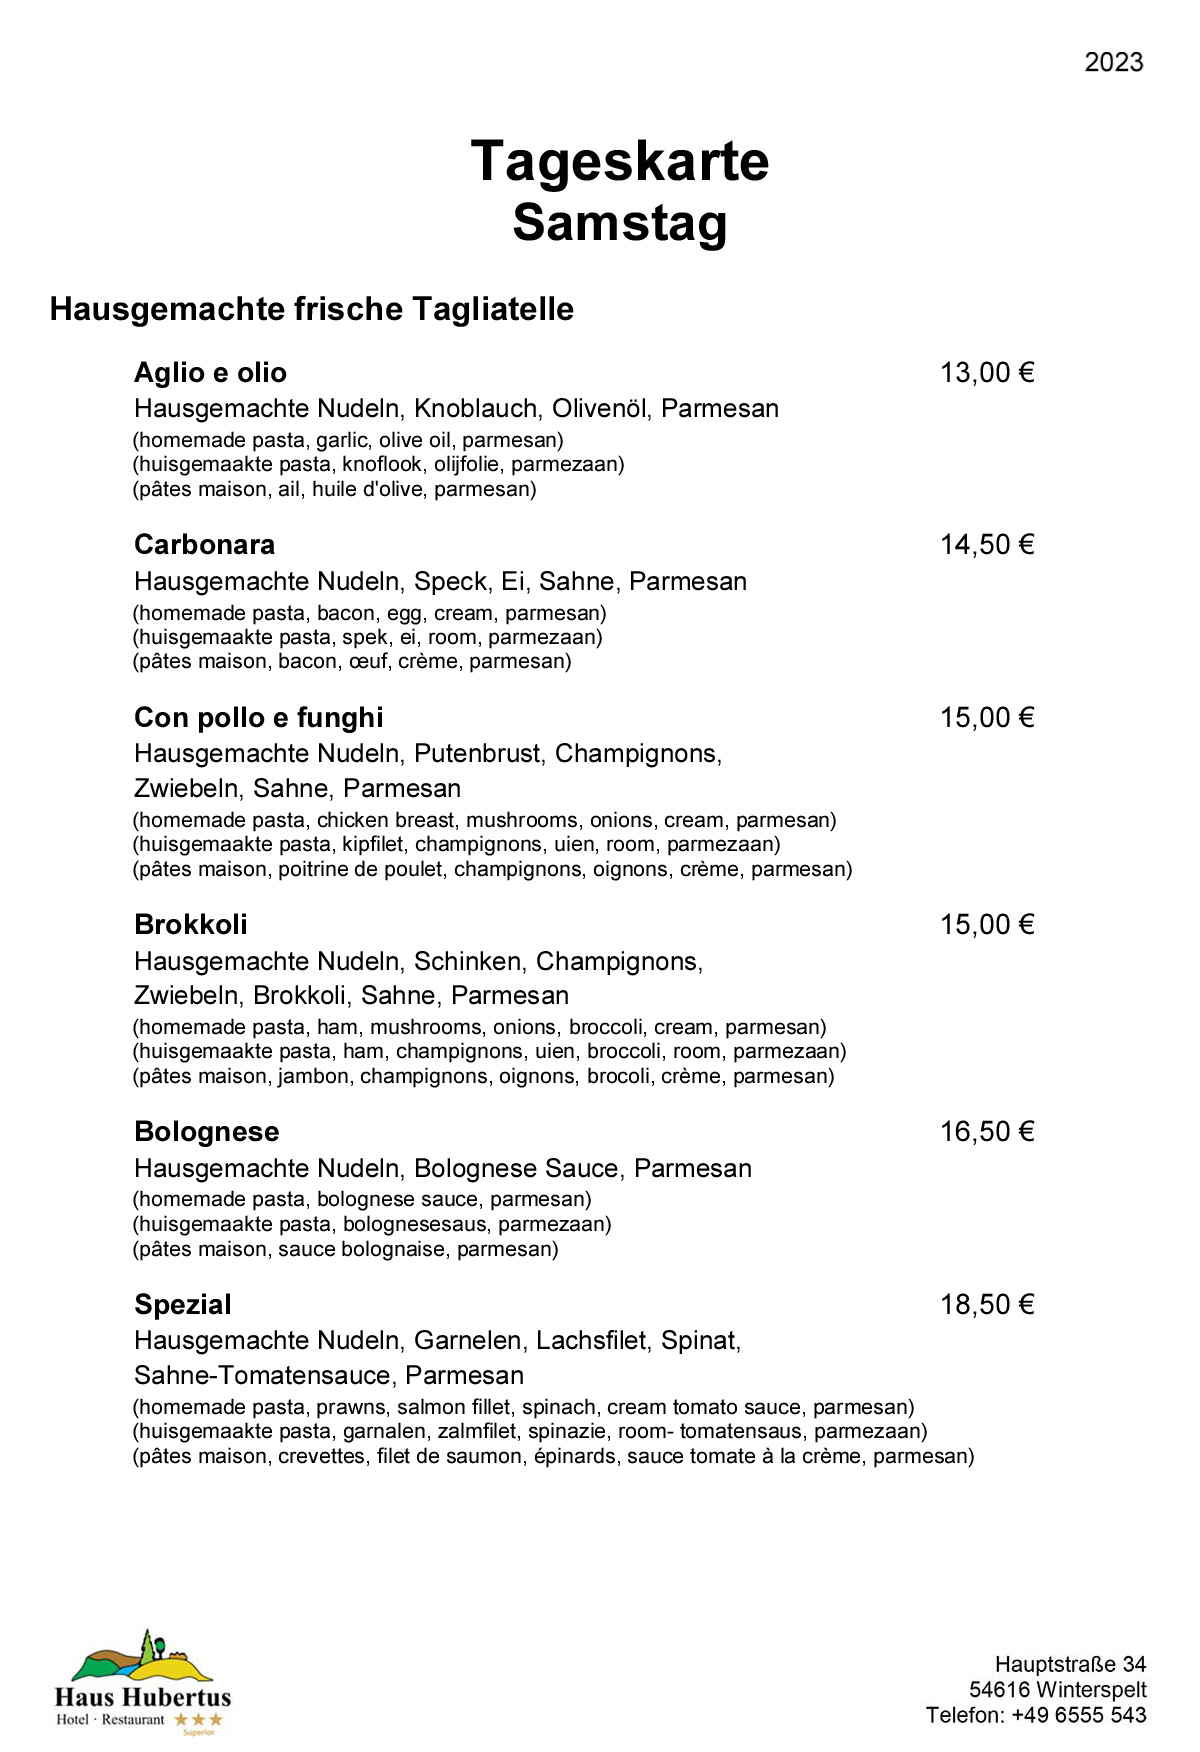 Hotel - Restaurant Haus Hubertus - Menu 02/2023 - Menu van de dag / Zaterdag